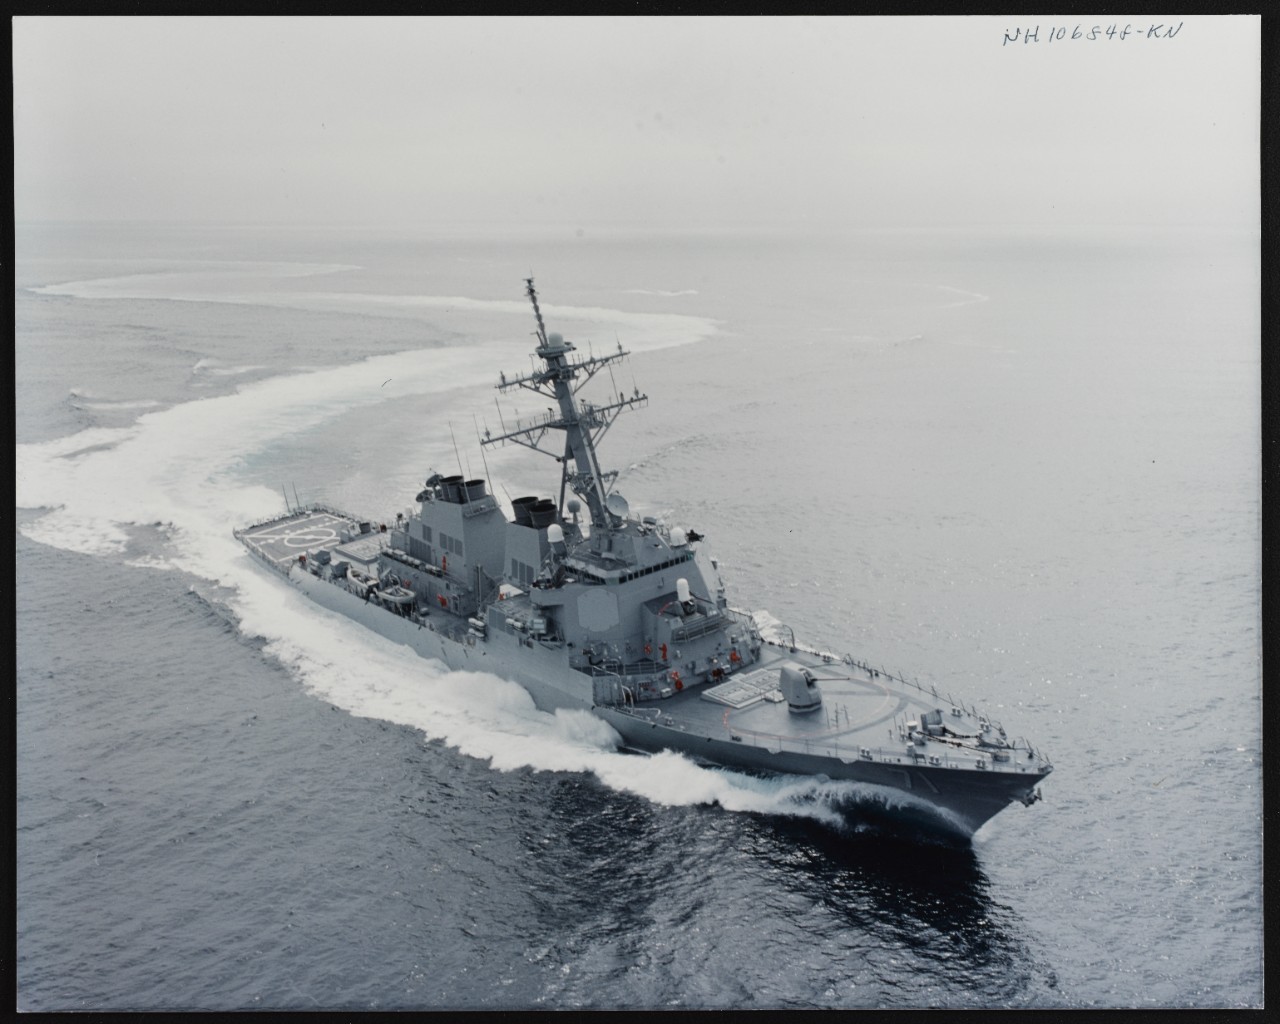 Photo # NH 106848-KN USS Ross